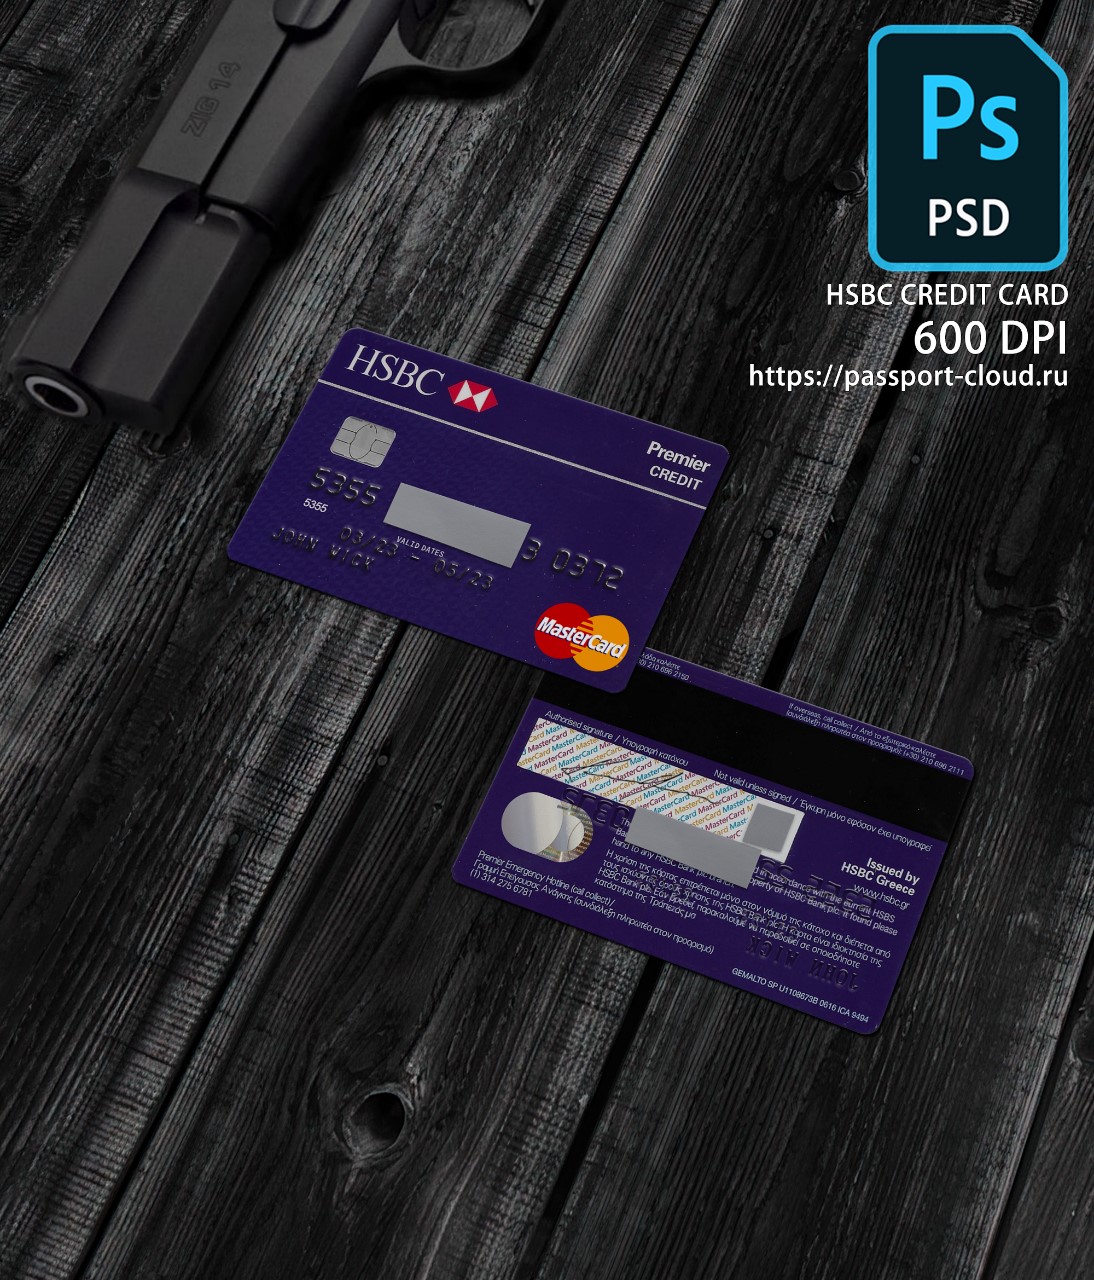 HSBC Credit Card PSD1